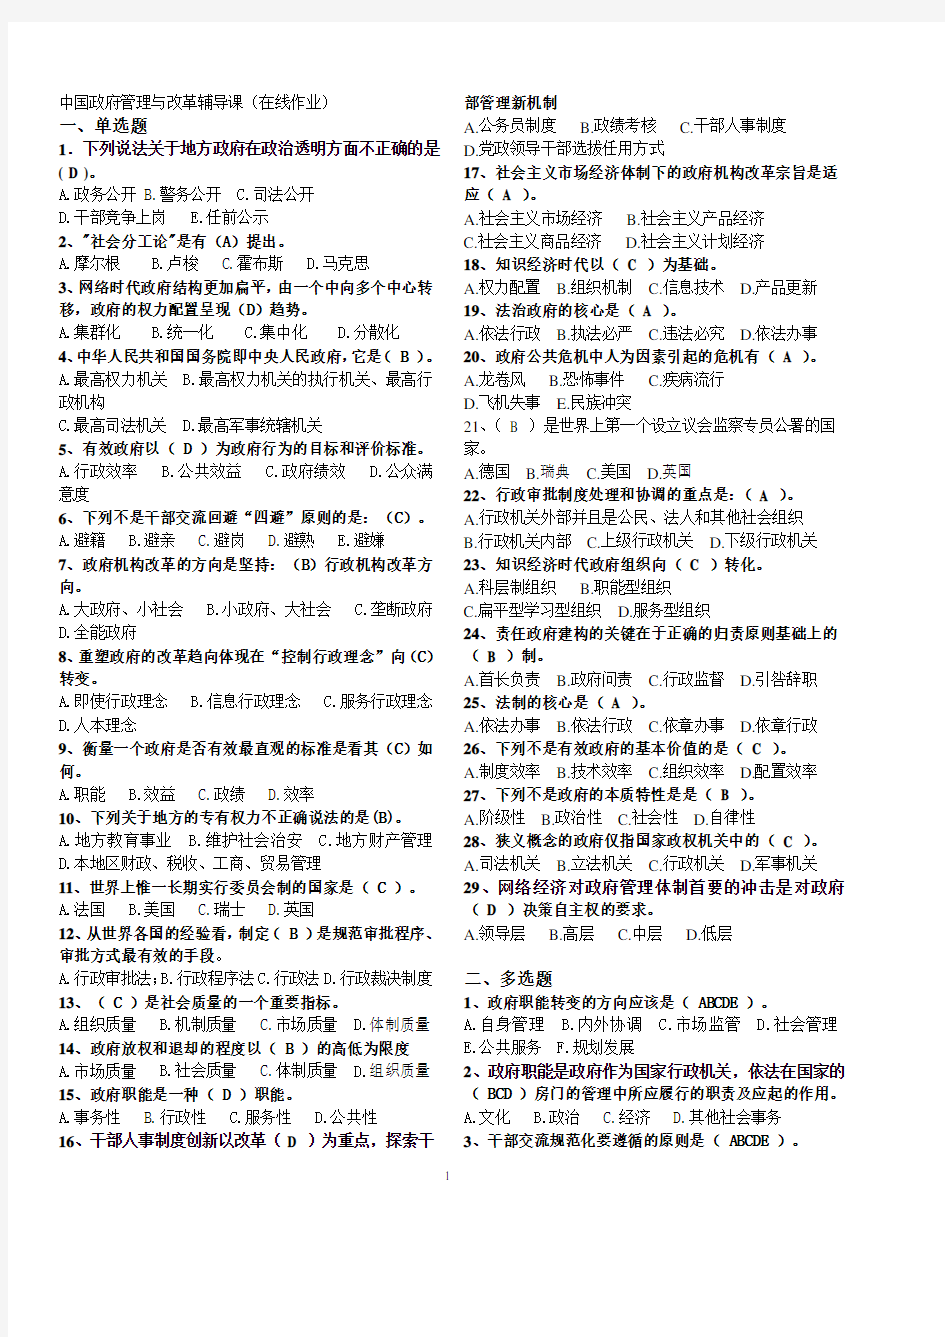 中国政府管理与改革期末复习资料 (2020年整理).pdf